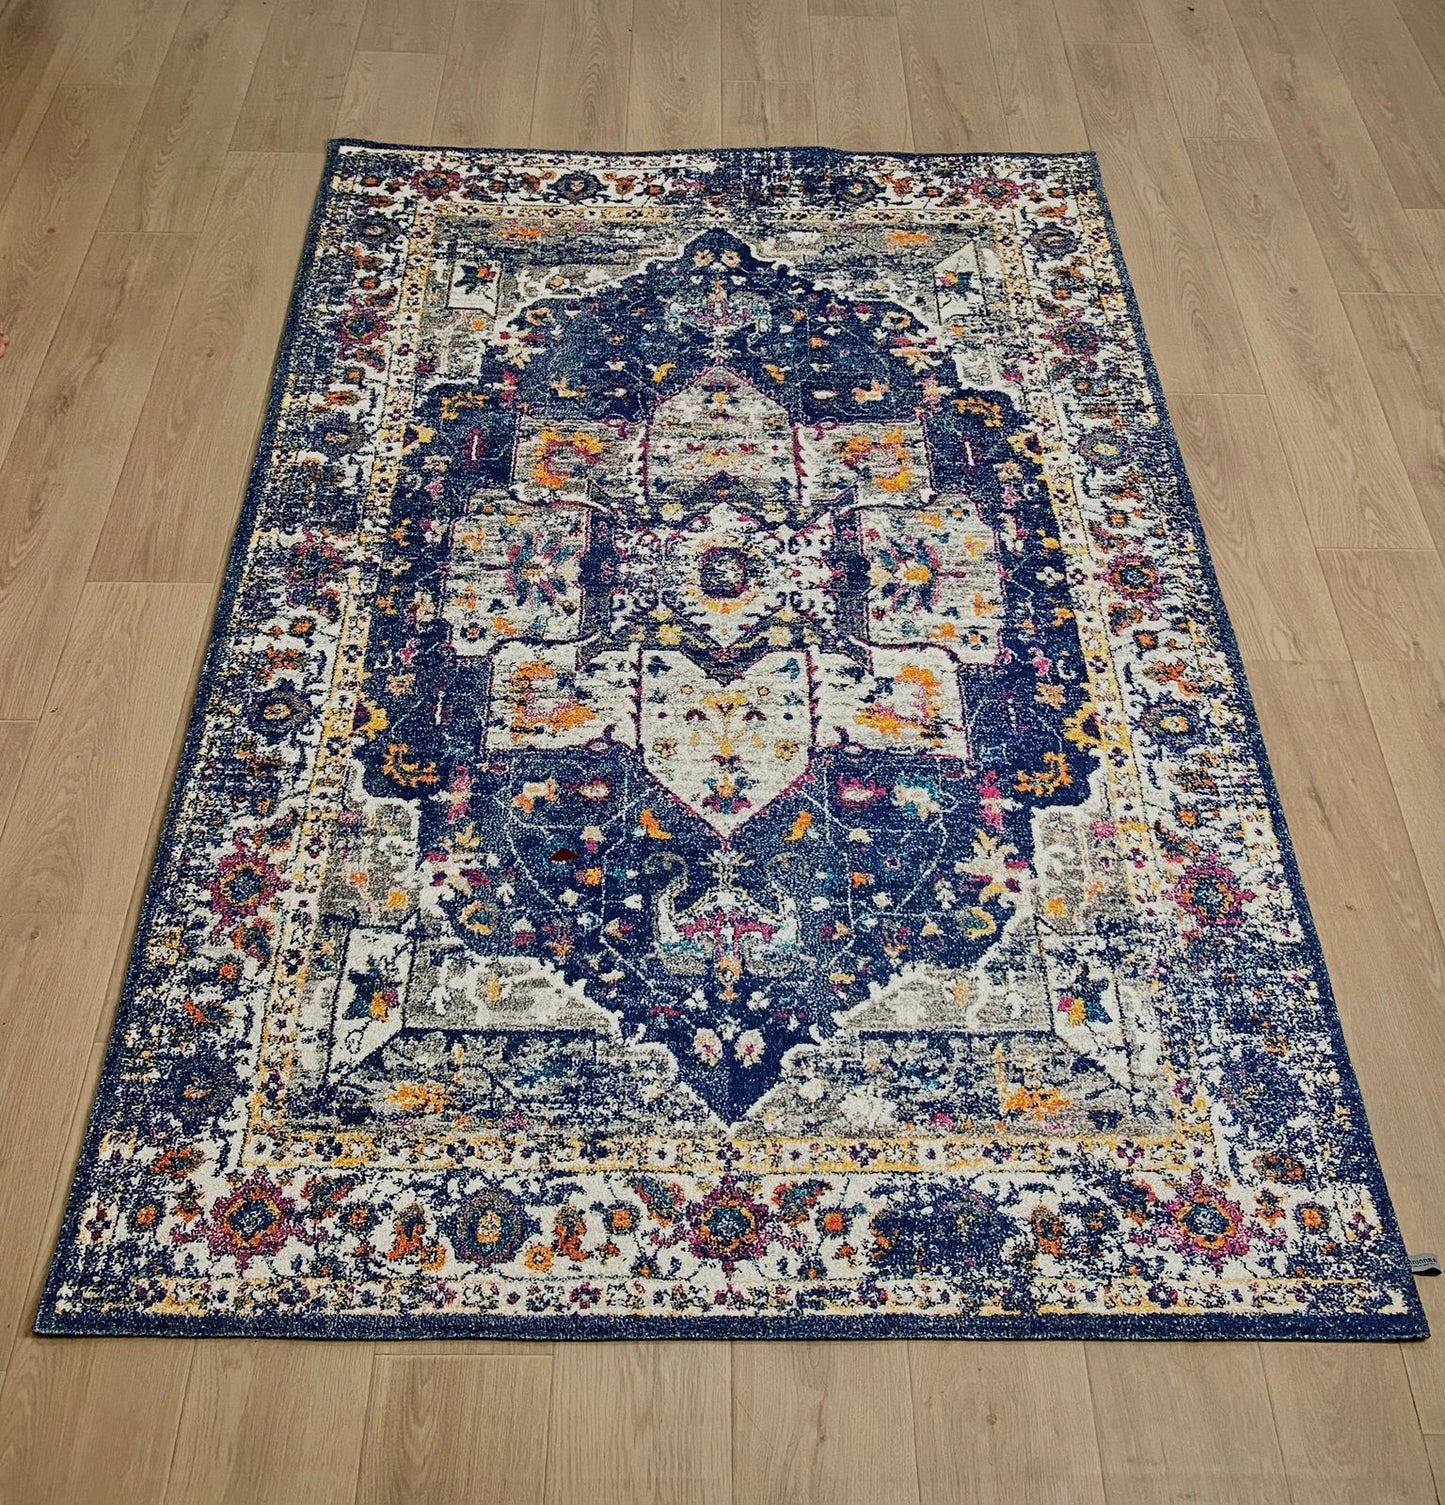 Karpet Tradisional (BU-T-0135) - Blue,Navy,Purpel,Orange